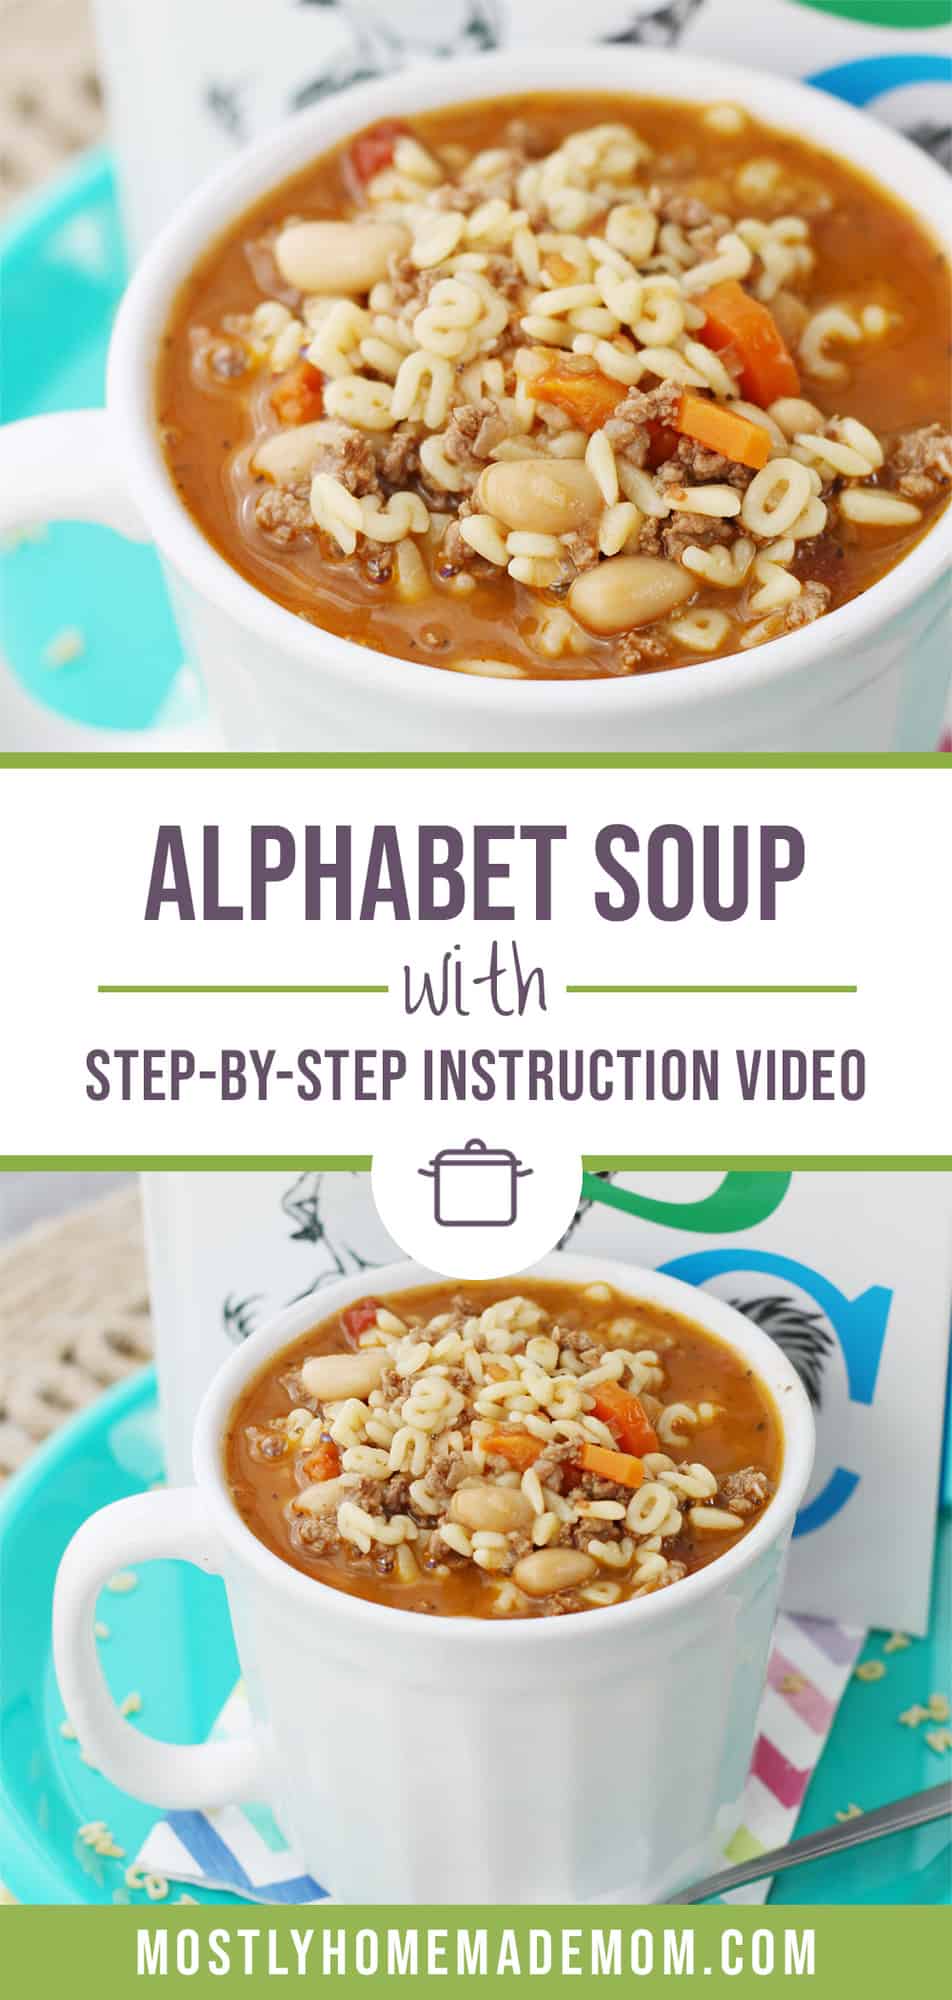 Alphabet Soup Recipe - Mostly Homemade Mom